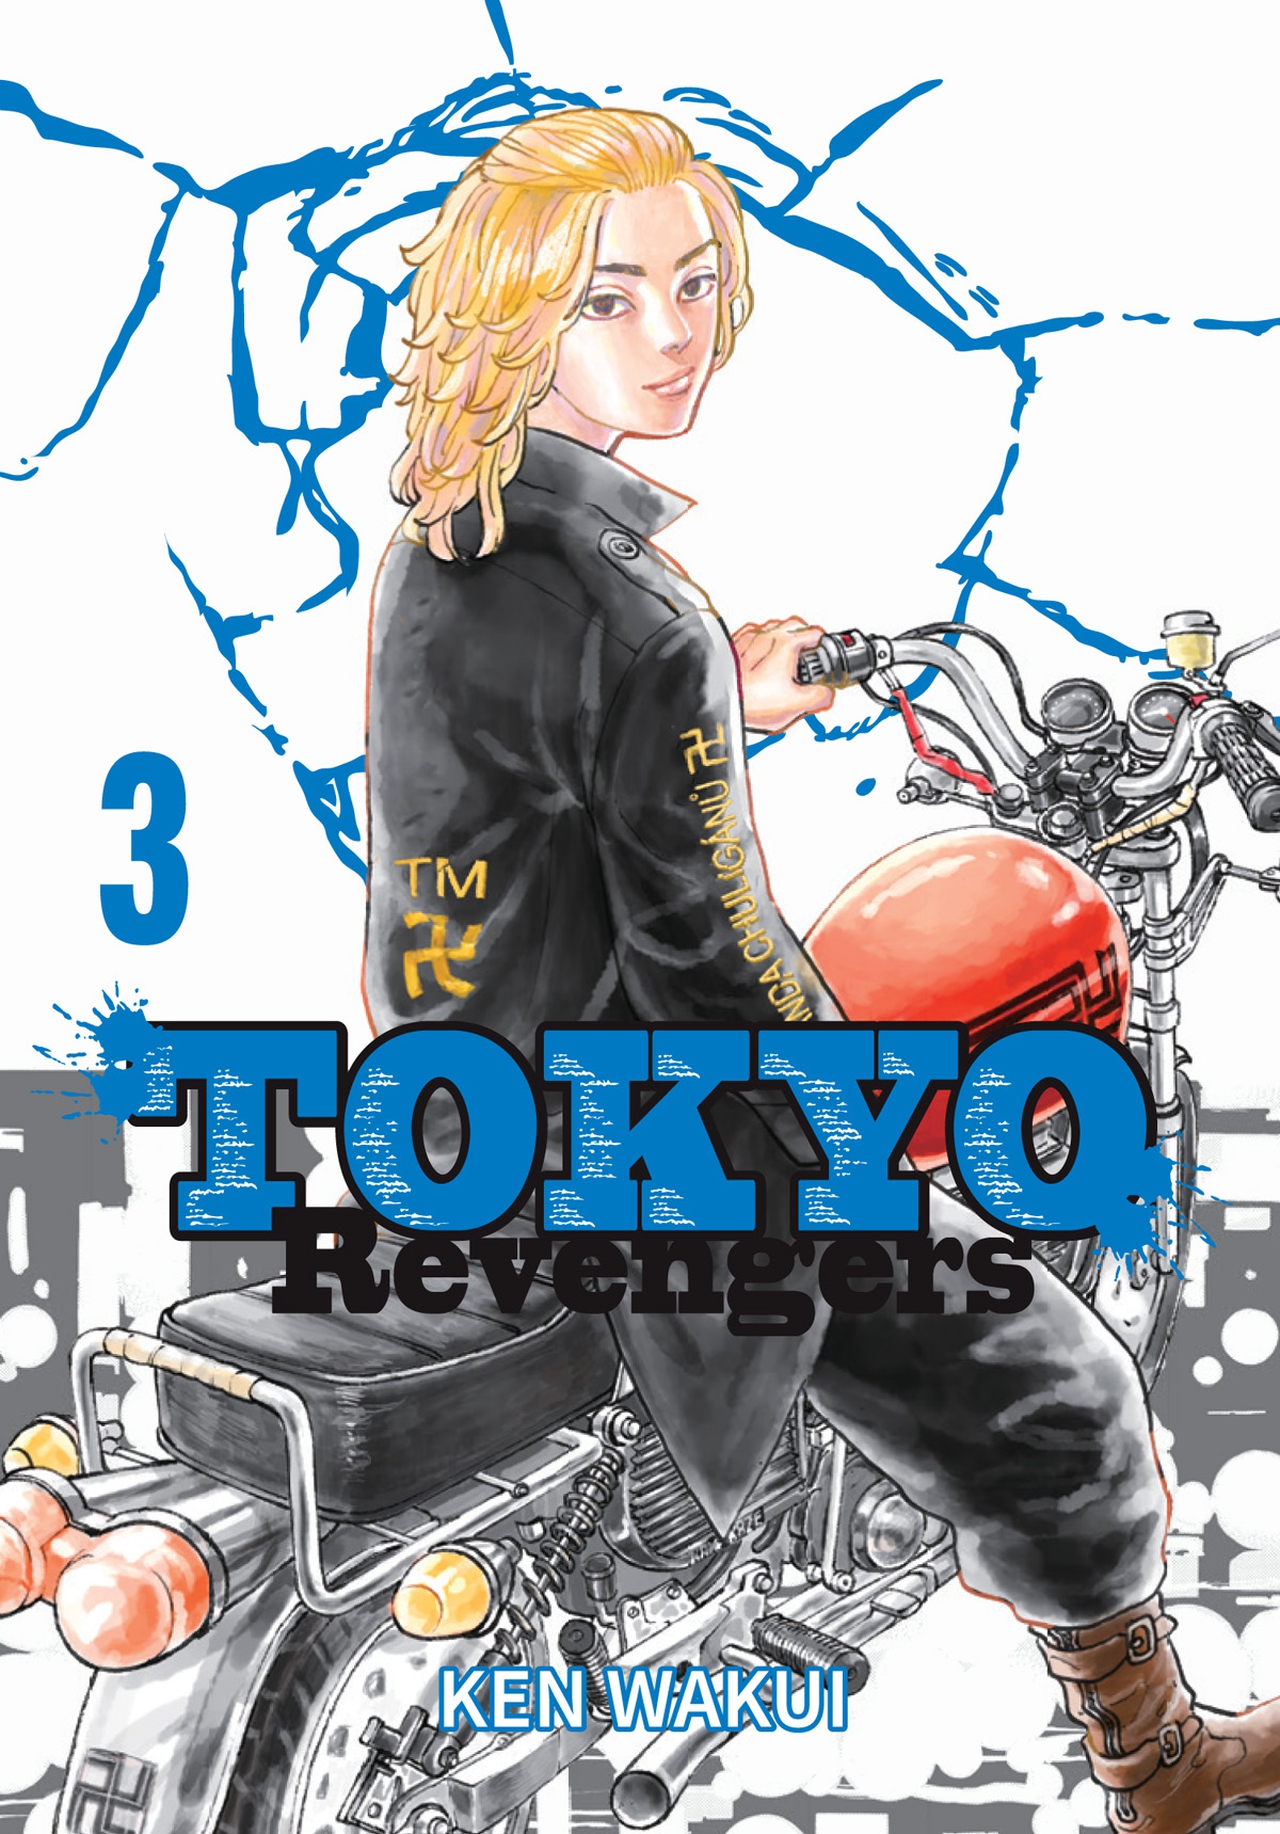 Wakui K.- Tokyo Revengers 3